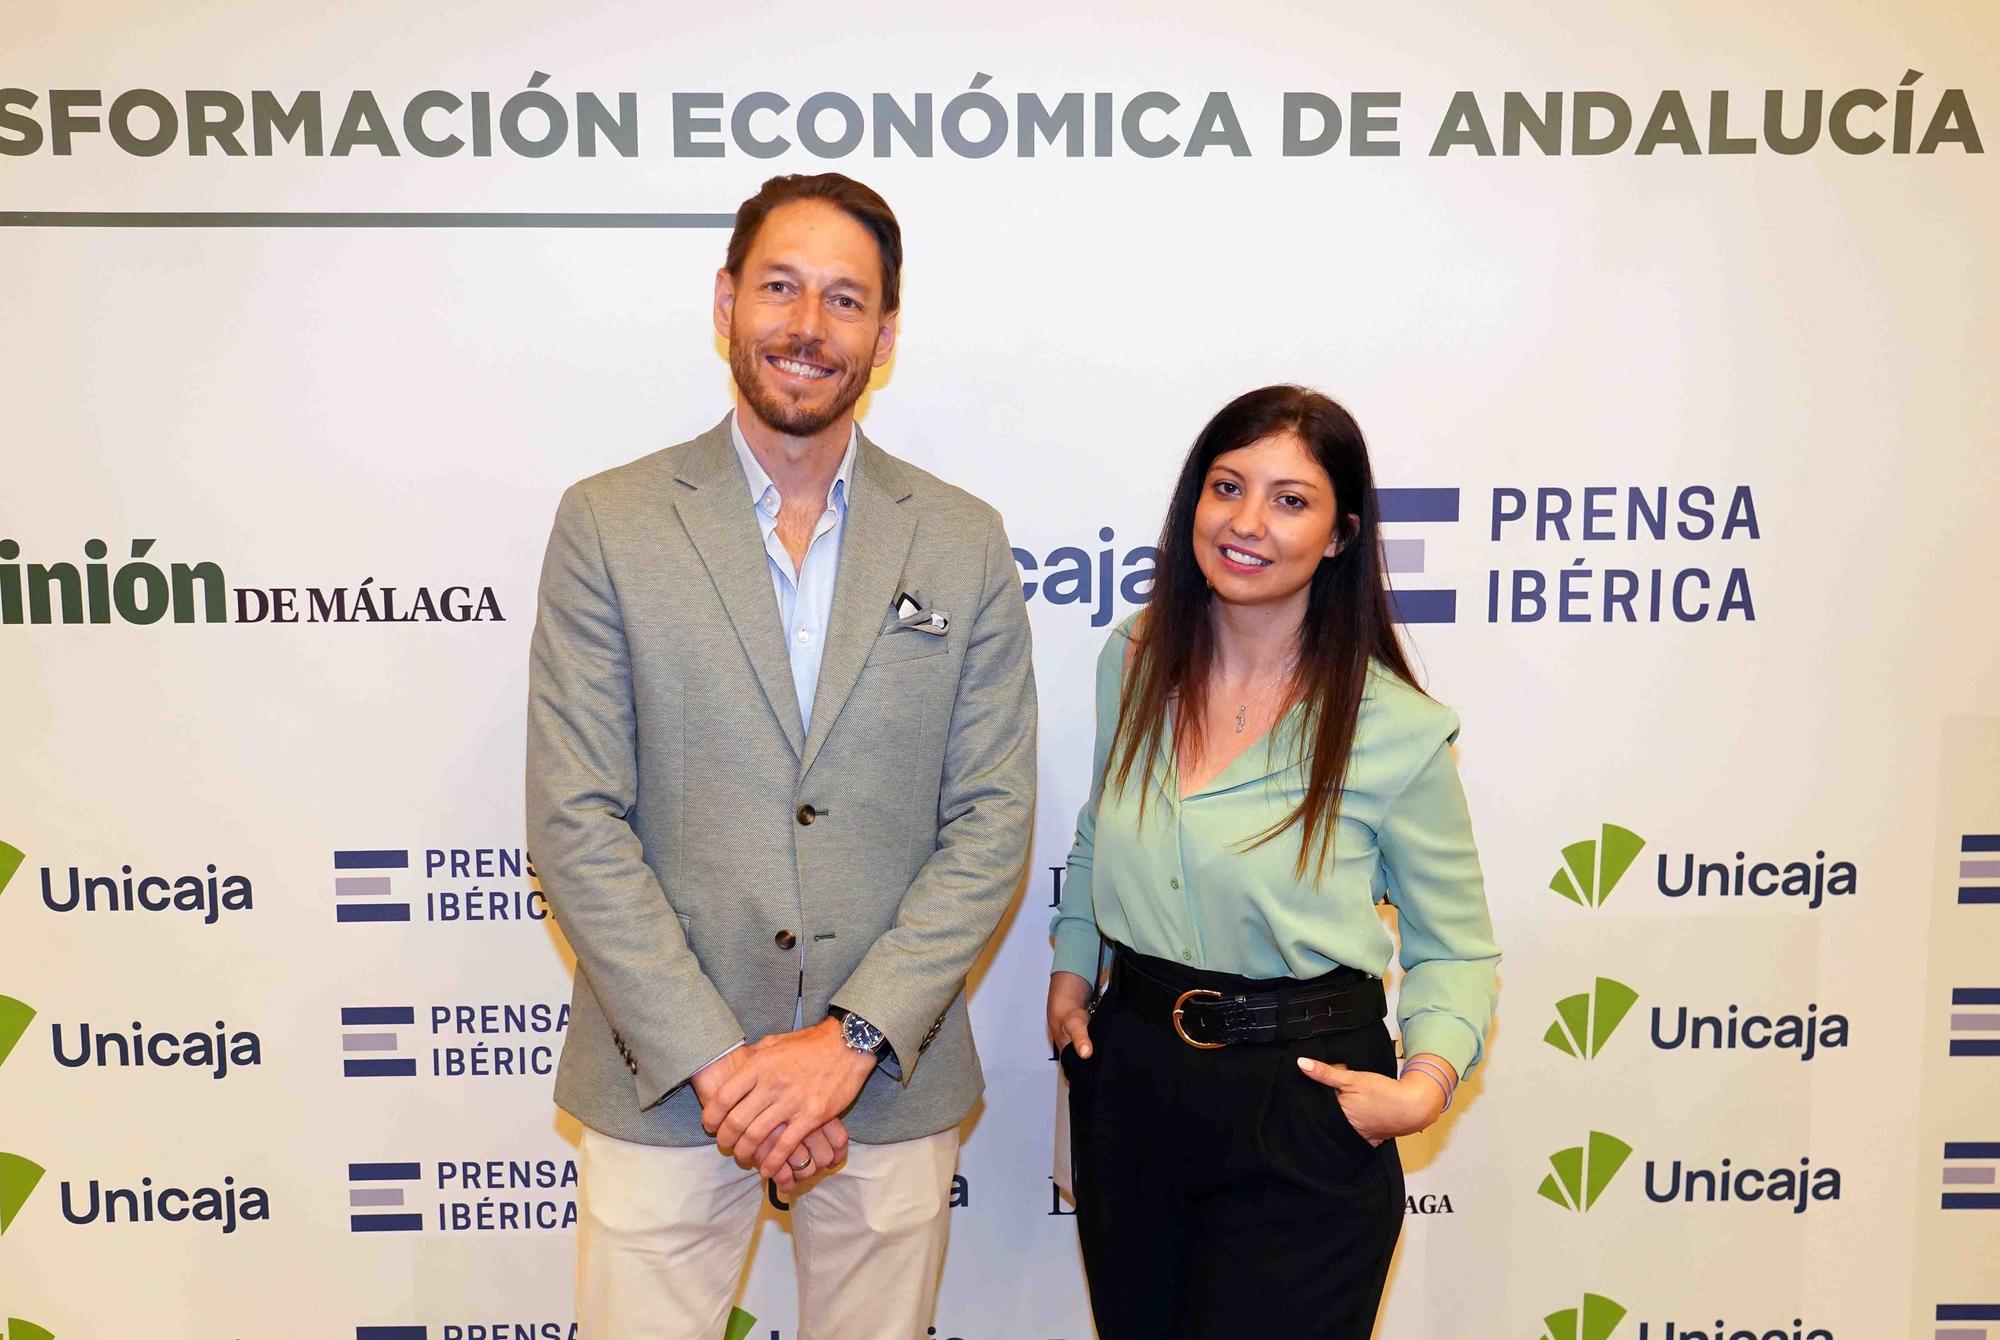 La consejera de Economía, Hacienda y Fondos Europeos, Carolina España, participa en el Foro de La Opinión de Málaga